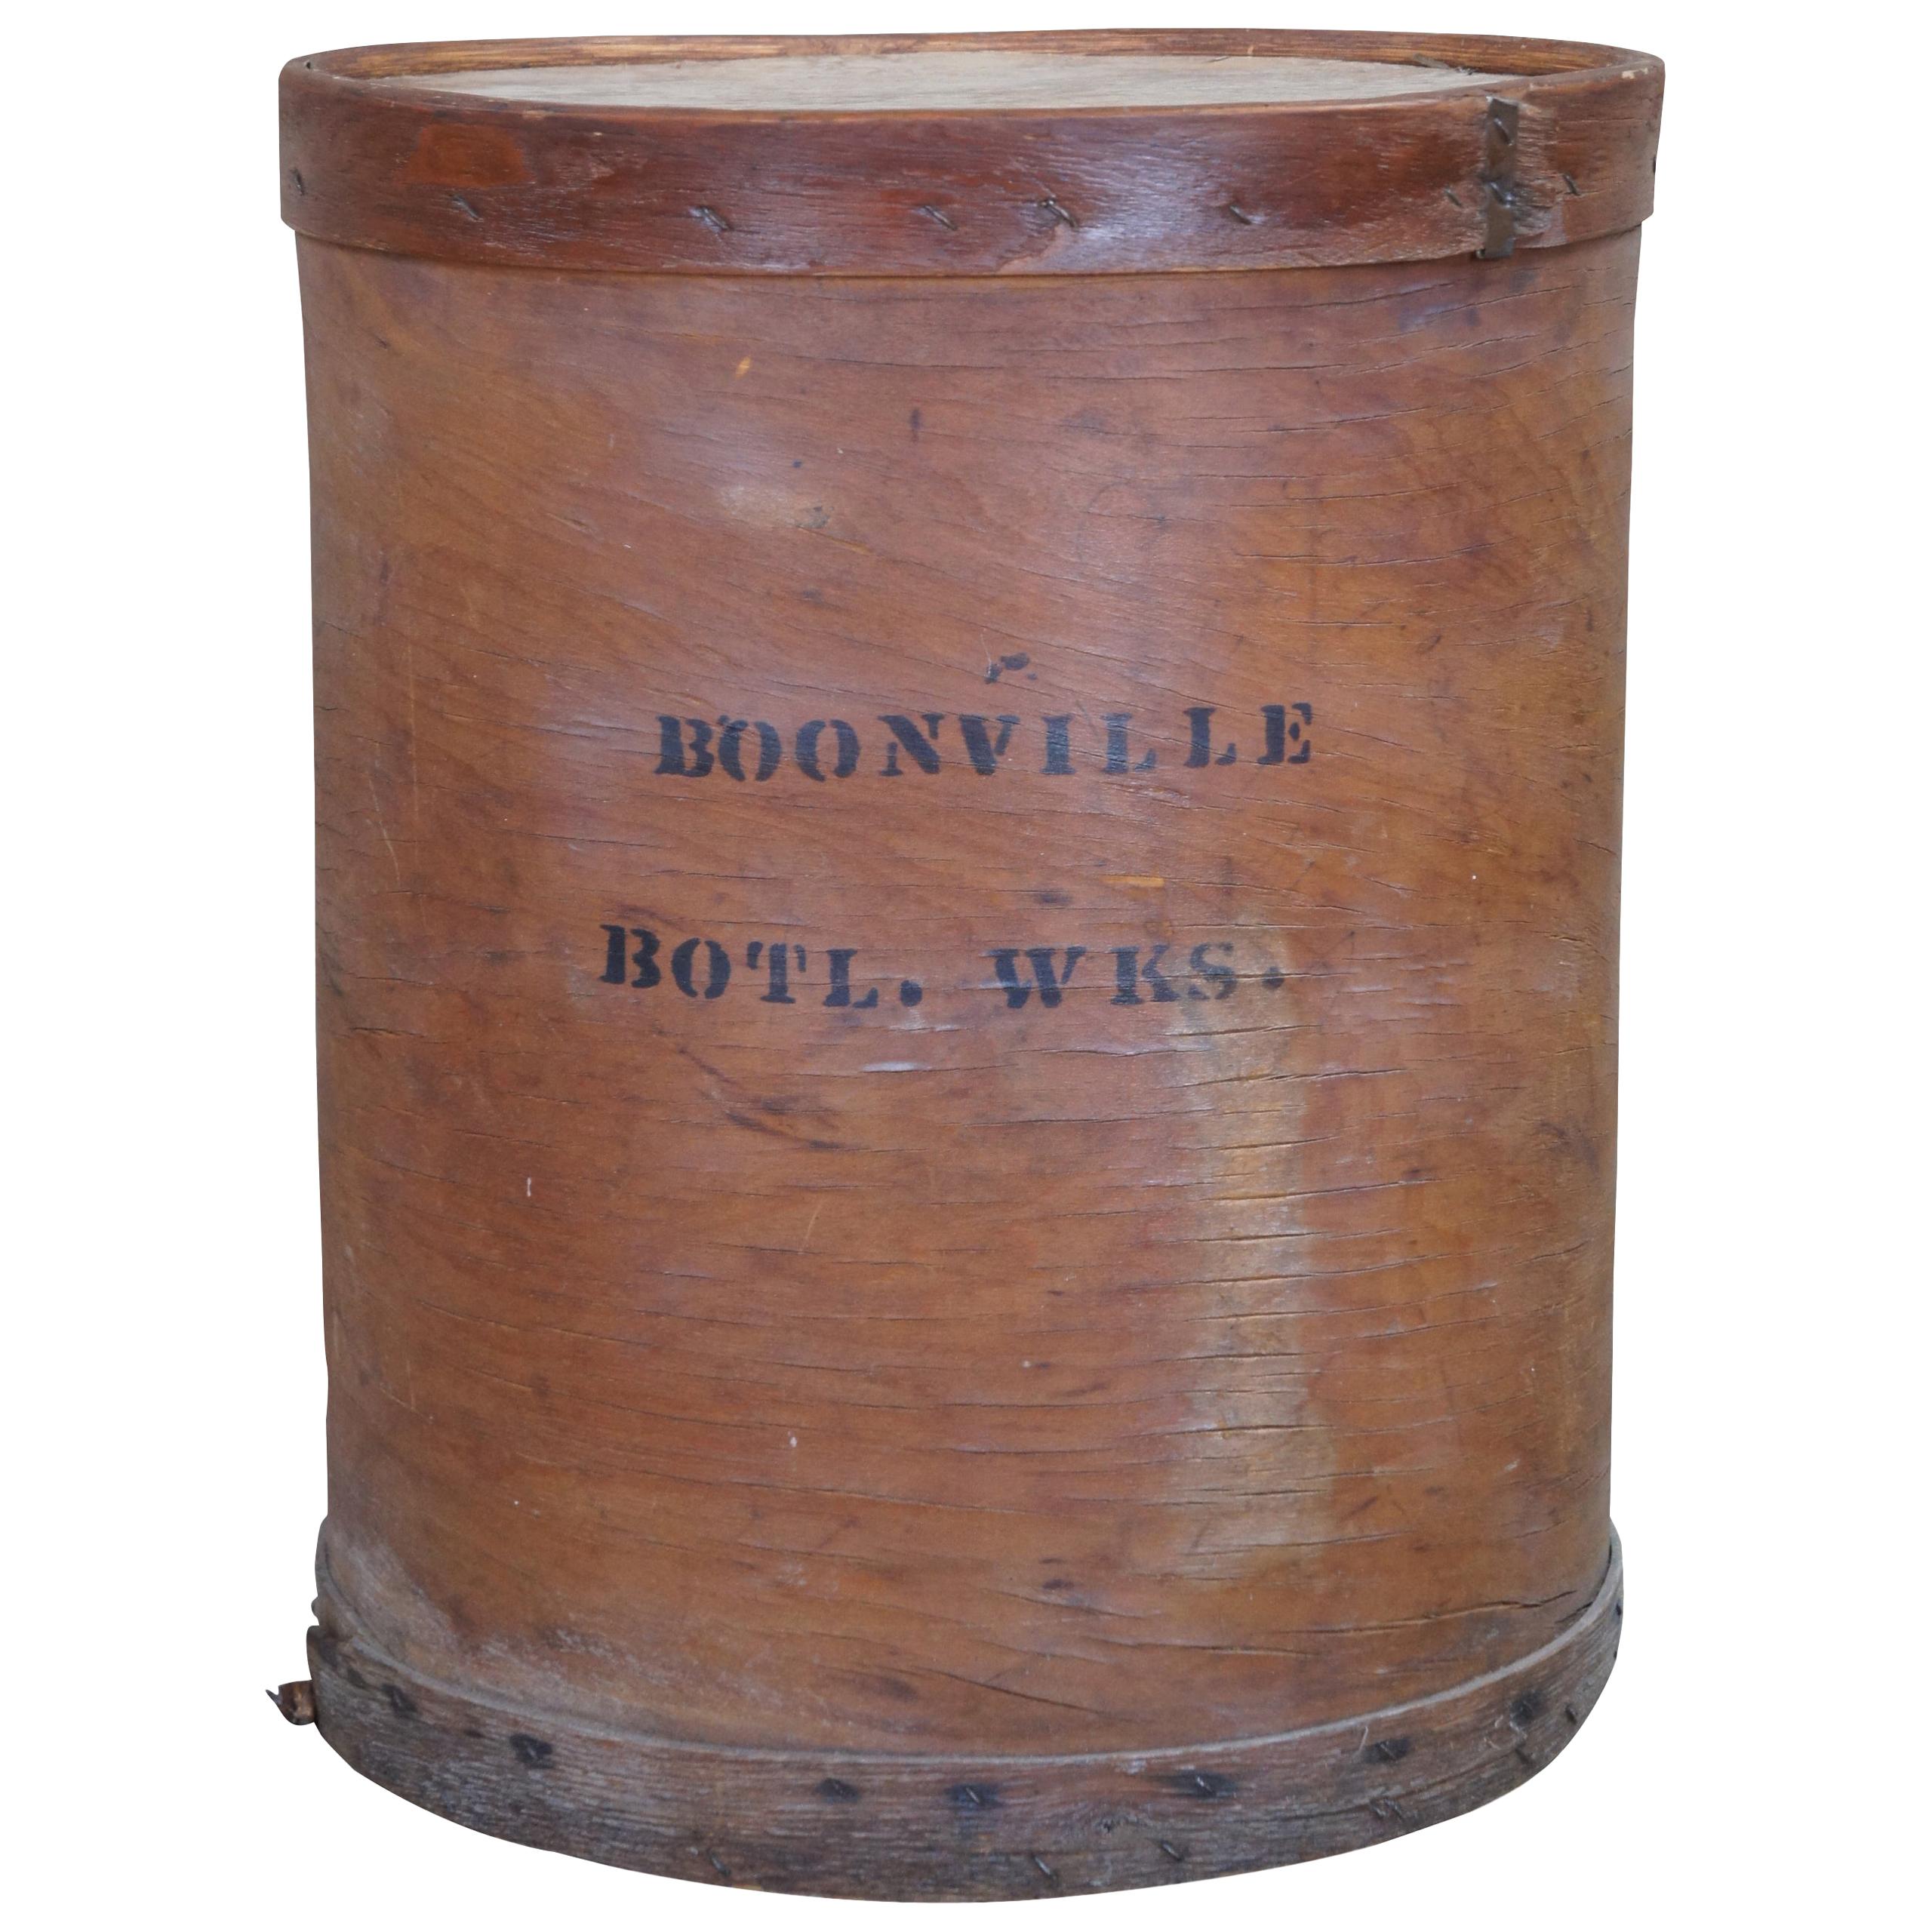 Primitive Boonville Bottling Works Bentwood Box Mercantile Barrel Industrial 23" For Sale